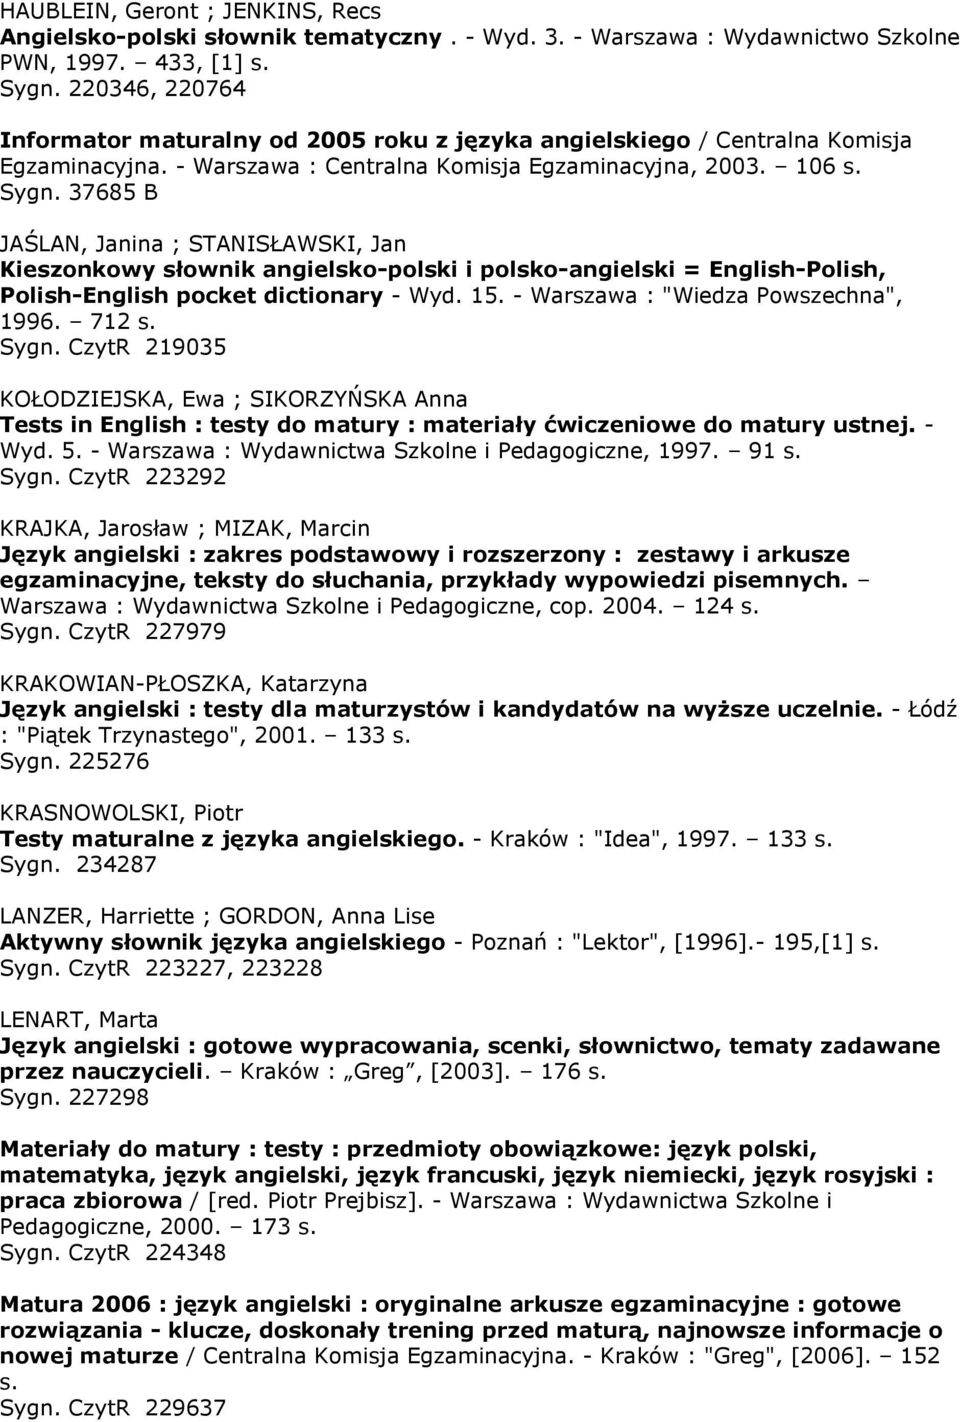 37685 B JAŚLAN, Janina ; STANISŁAWSKI, Jan Kieszonkowy słownik angielsko-polski i polsko-angielski = English-Polish, Polish-English pocket dictionary - Wyd. 15. - Warszawa : "Wiedza Powszechna", 1996.